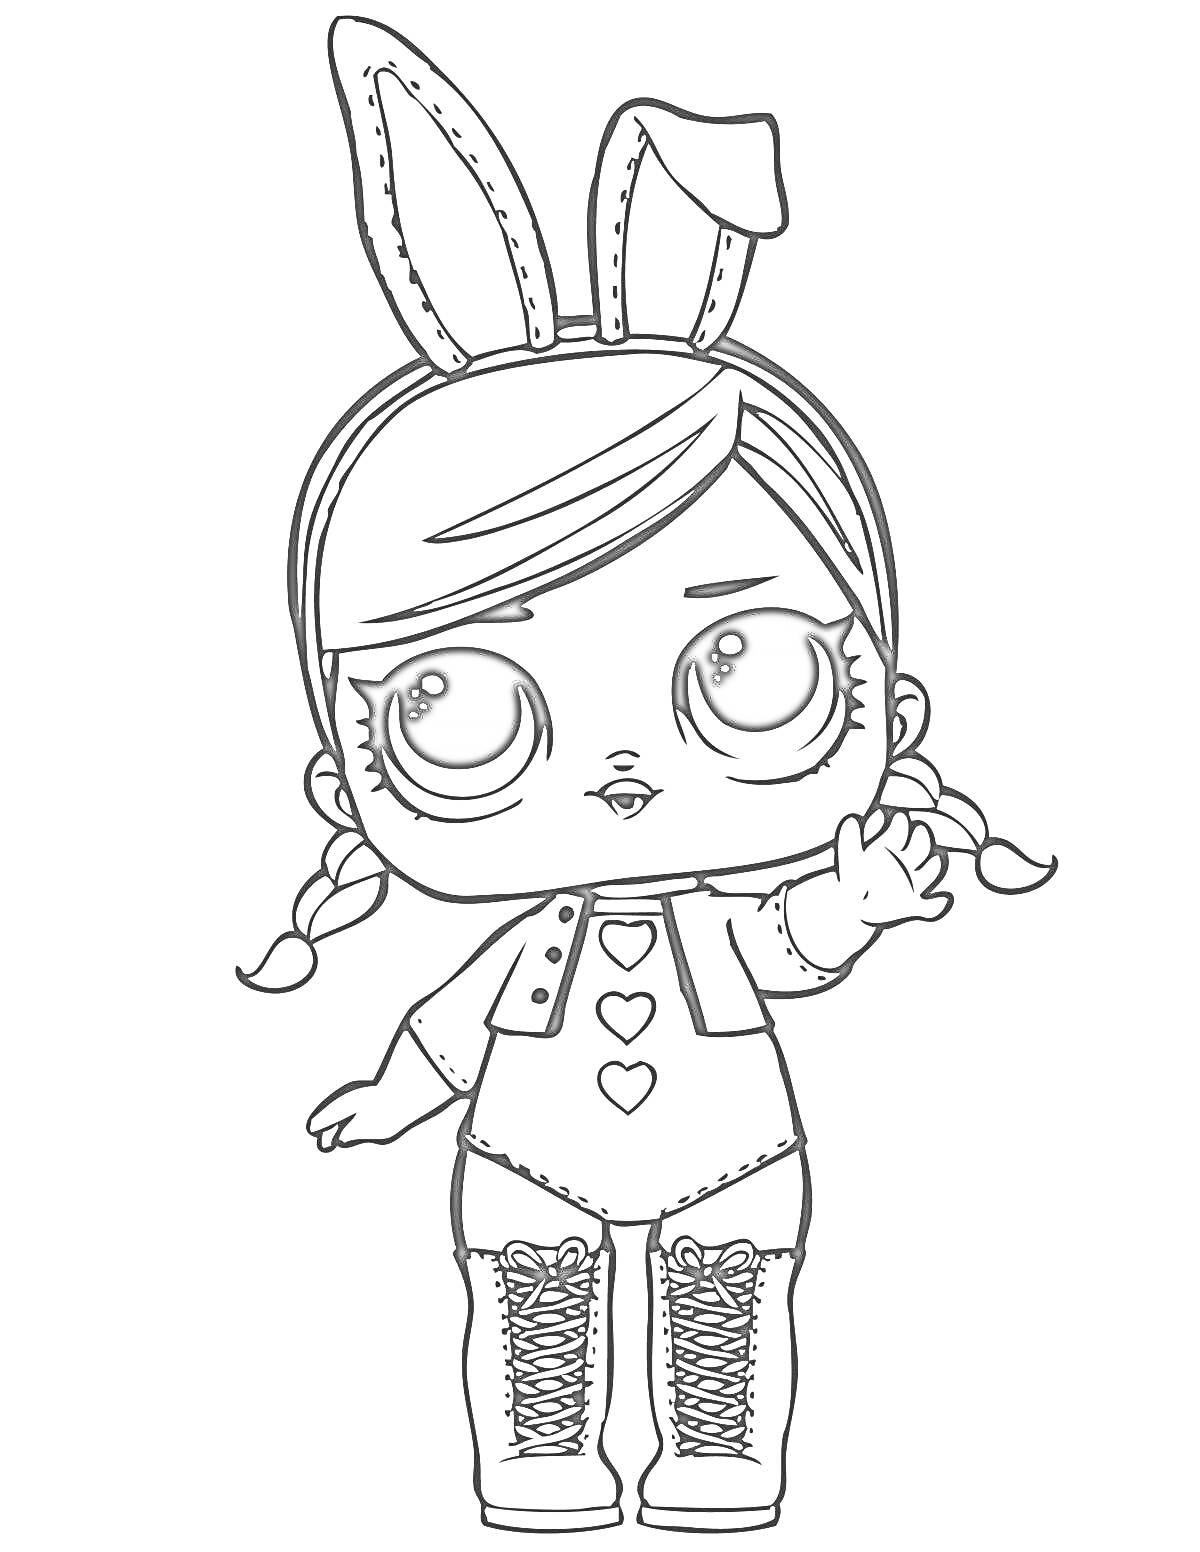 Раскраска Кукла ЛОЛ с ушками зайчика, в шортиках, носочках и сапогах с шнуровкой